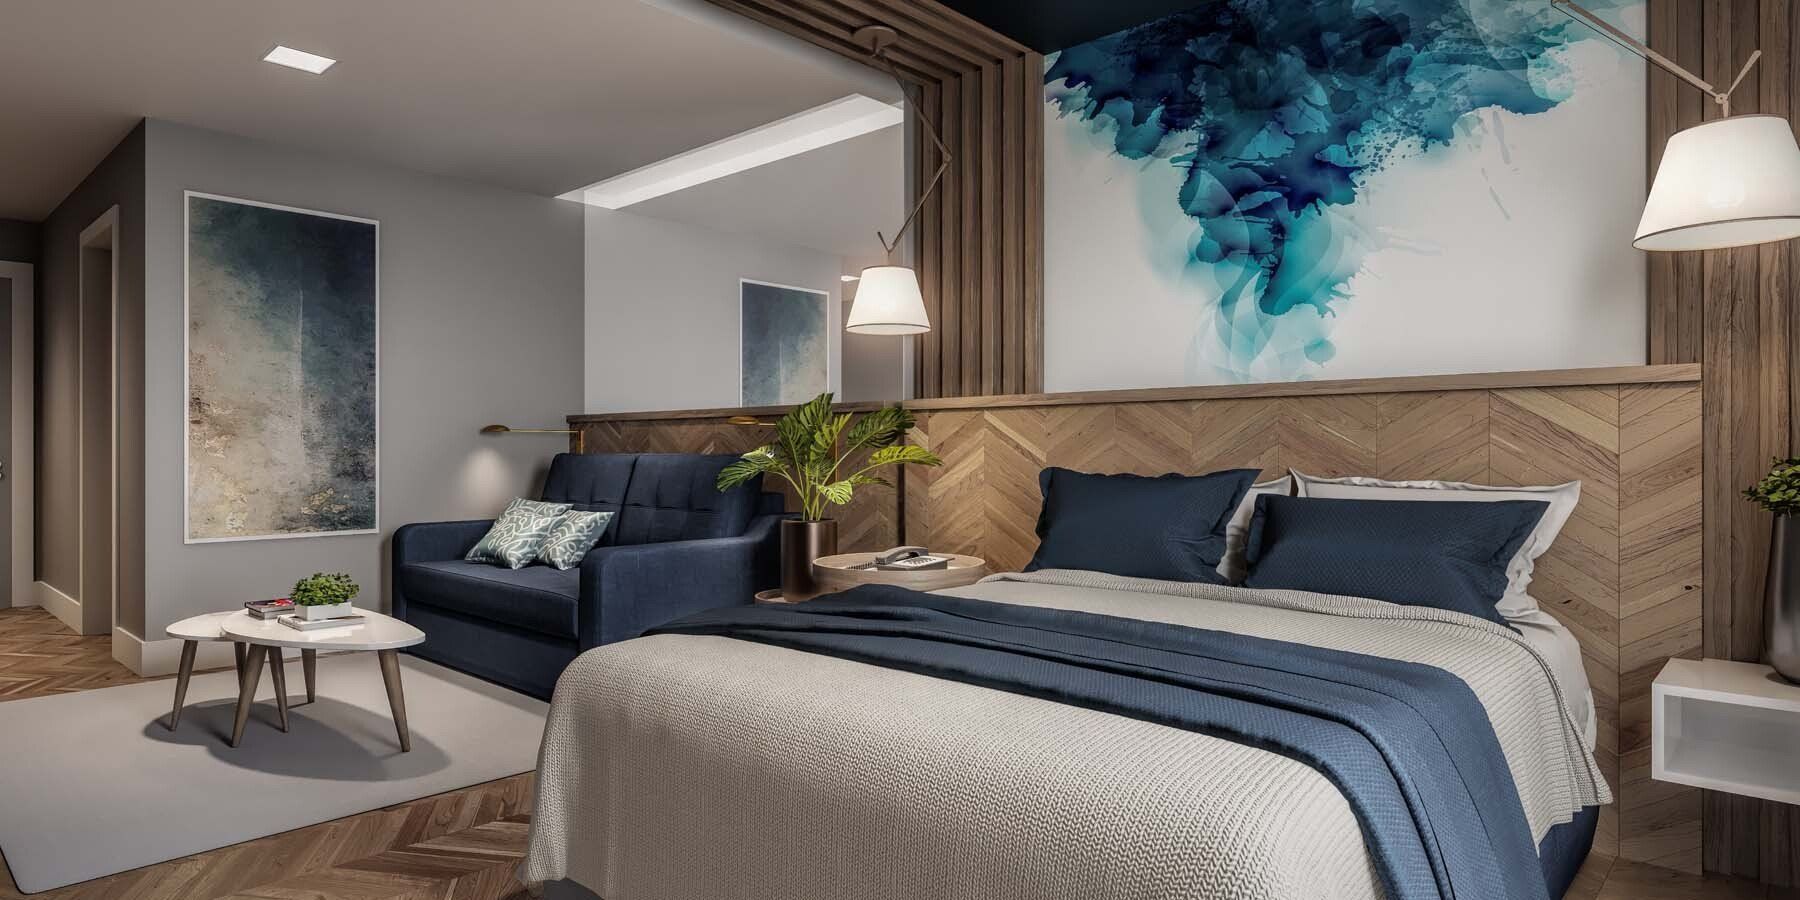 Conceito das acomodações do Aquan Prime Resort, com decorações de madeira e roupas de cama em tons de cinza e azul marinho.